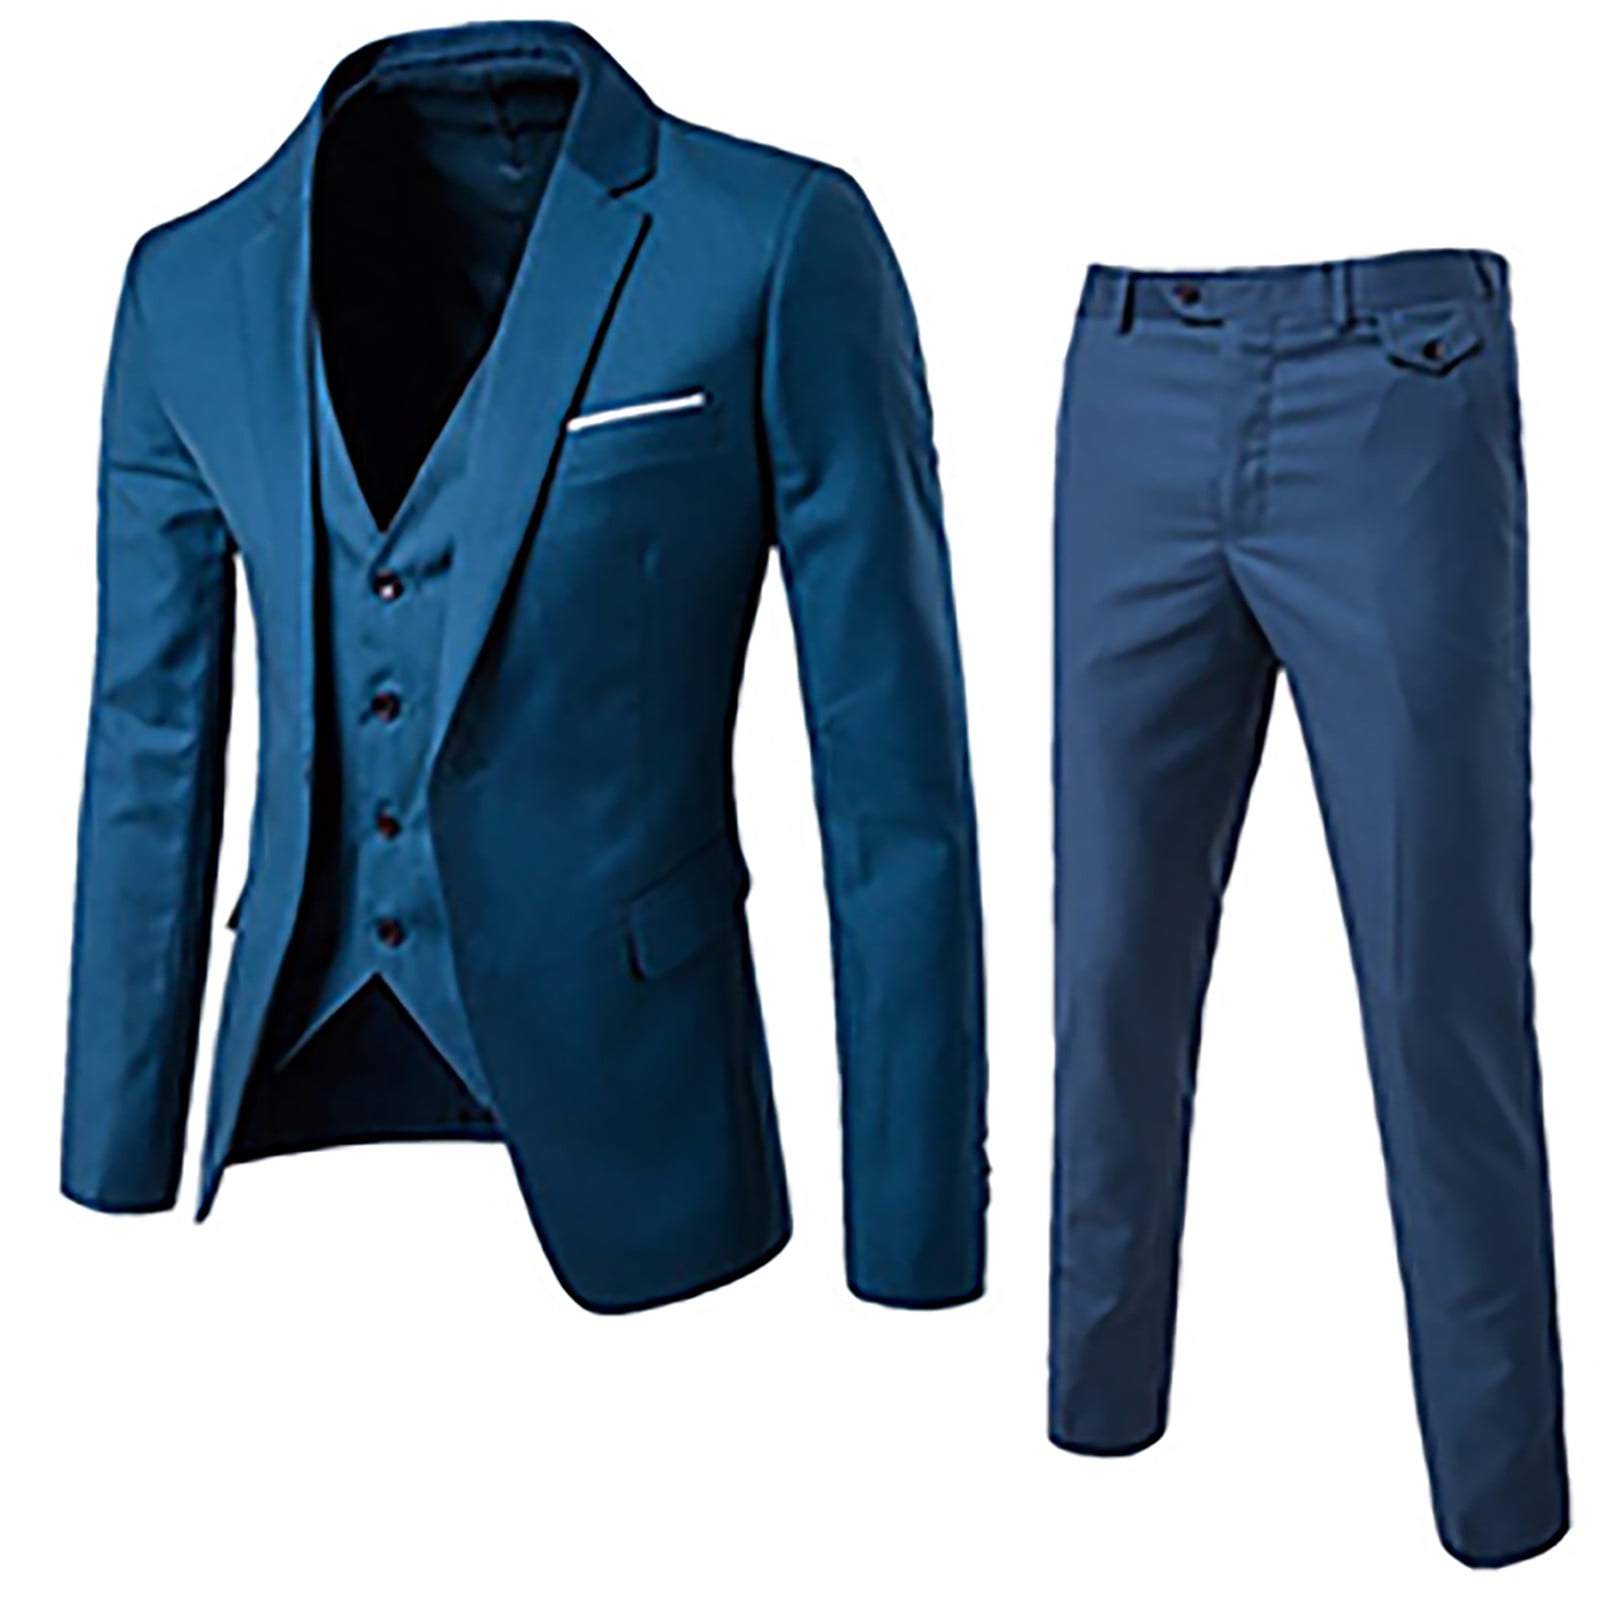 T Shirt Dress Men's Suit Slim 3 Piece Suit Business Wedding Party Jacket  Vest & Pants Coat Blue - Walmart.com